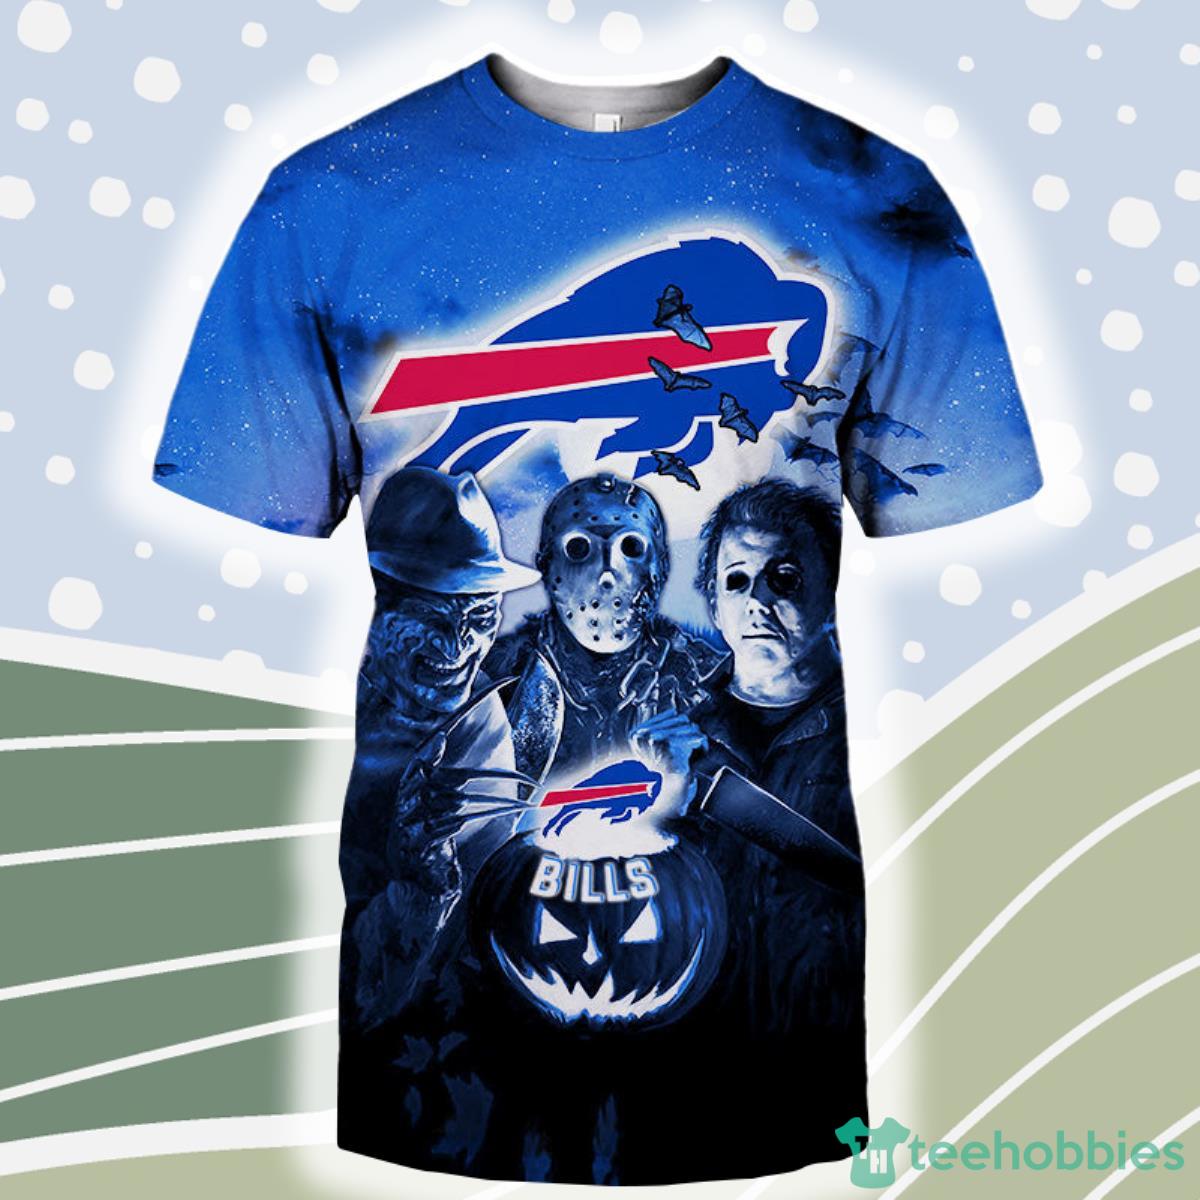 Buffalo-Bills-nfl-T-shirt-3D-Halloween-Horror-team-killer-For-fans